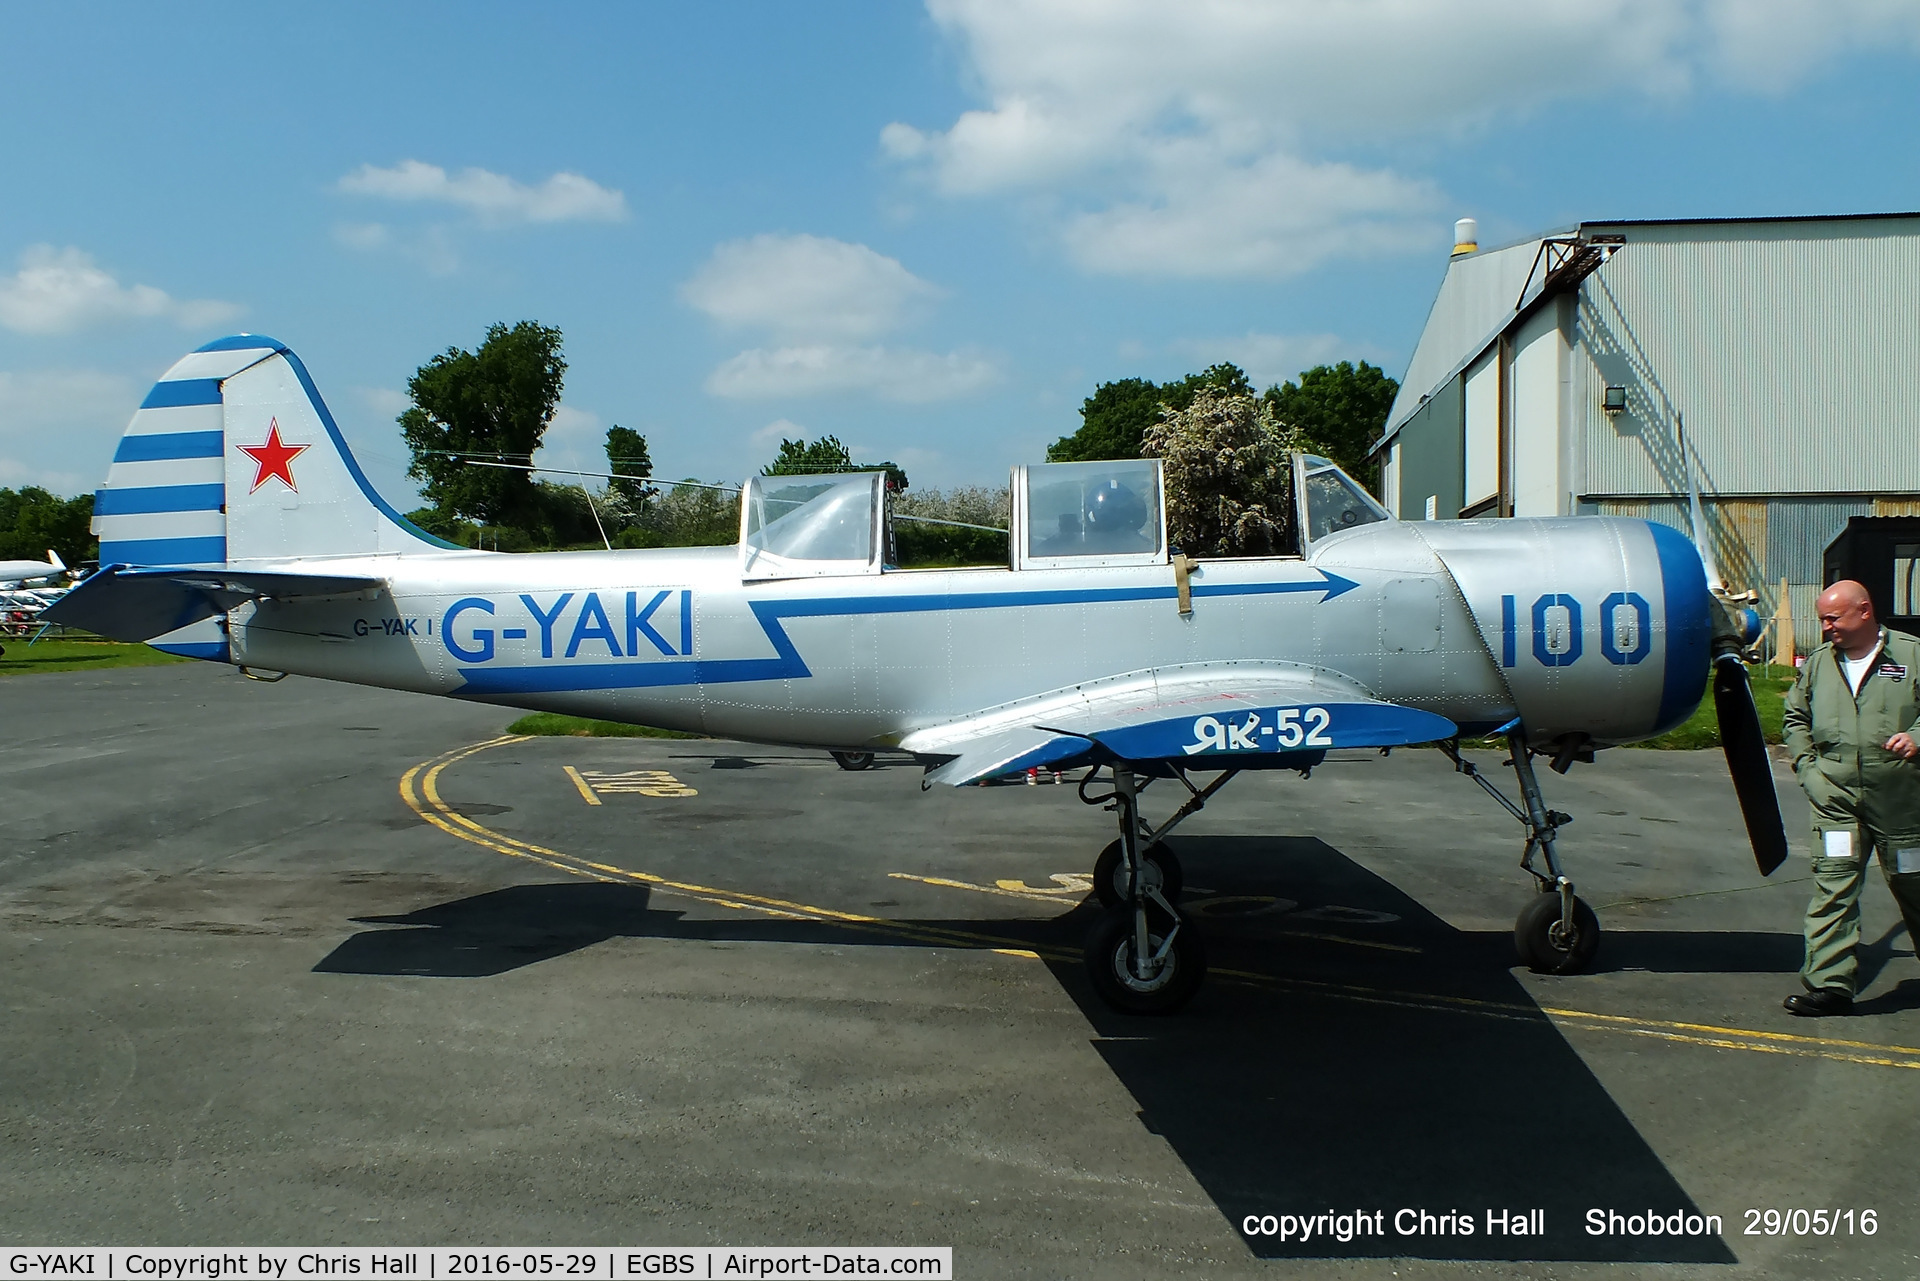 G-YAKI, 1986 Bacau Yak-52 C/N 866904, at Shobdon